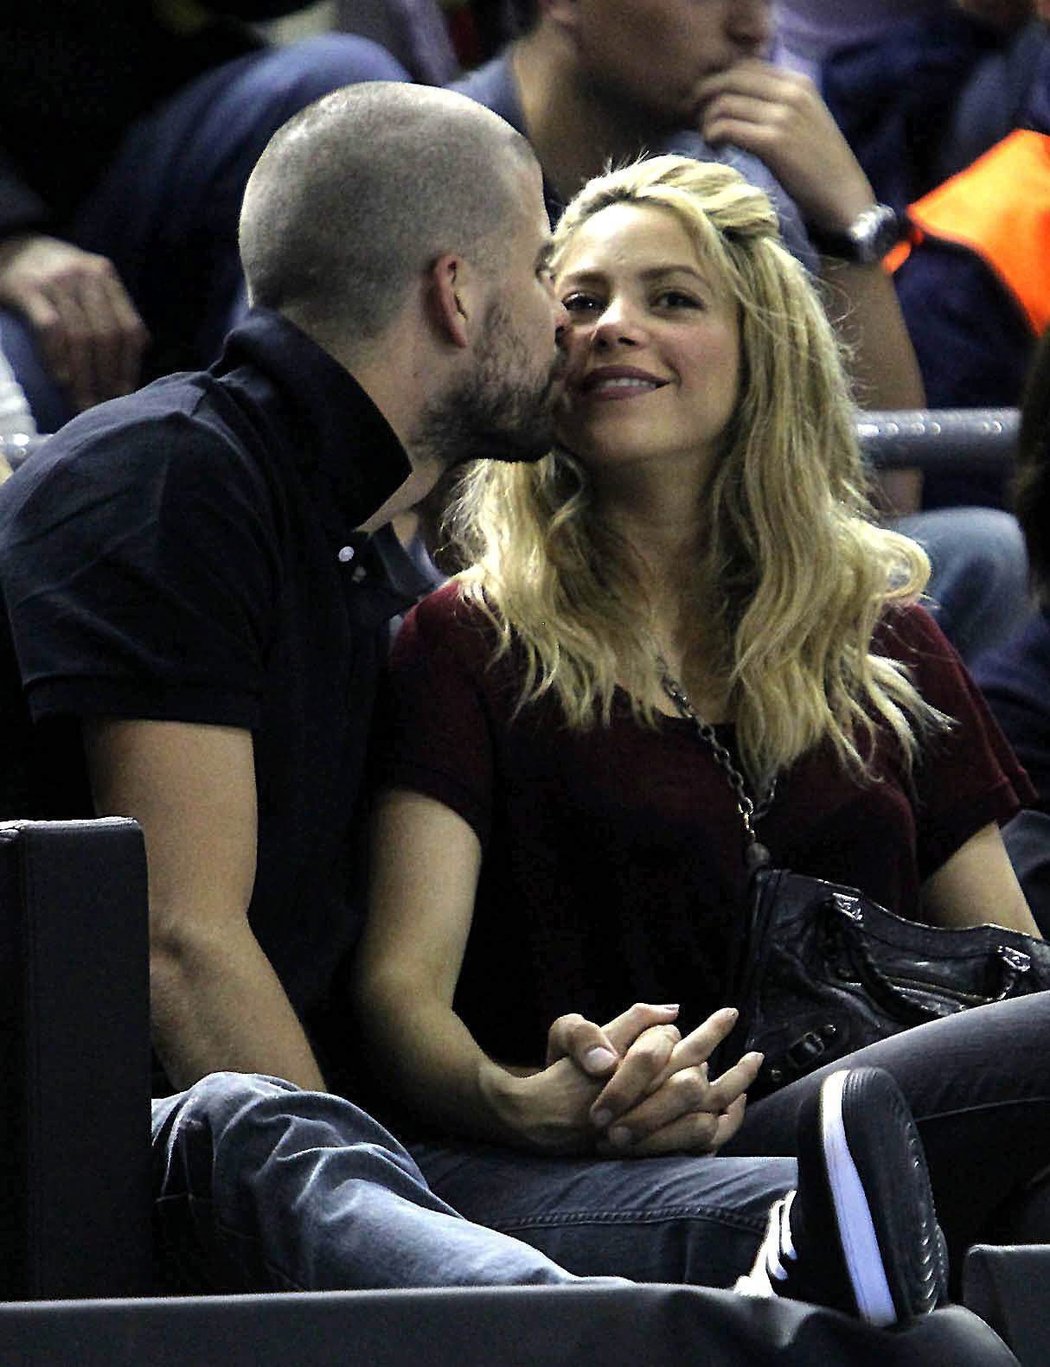 Gerard Piqué a Shakira byli k vidění na utkání basketbalistů Barcelony